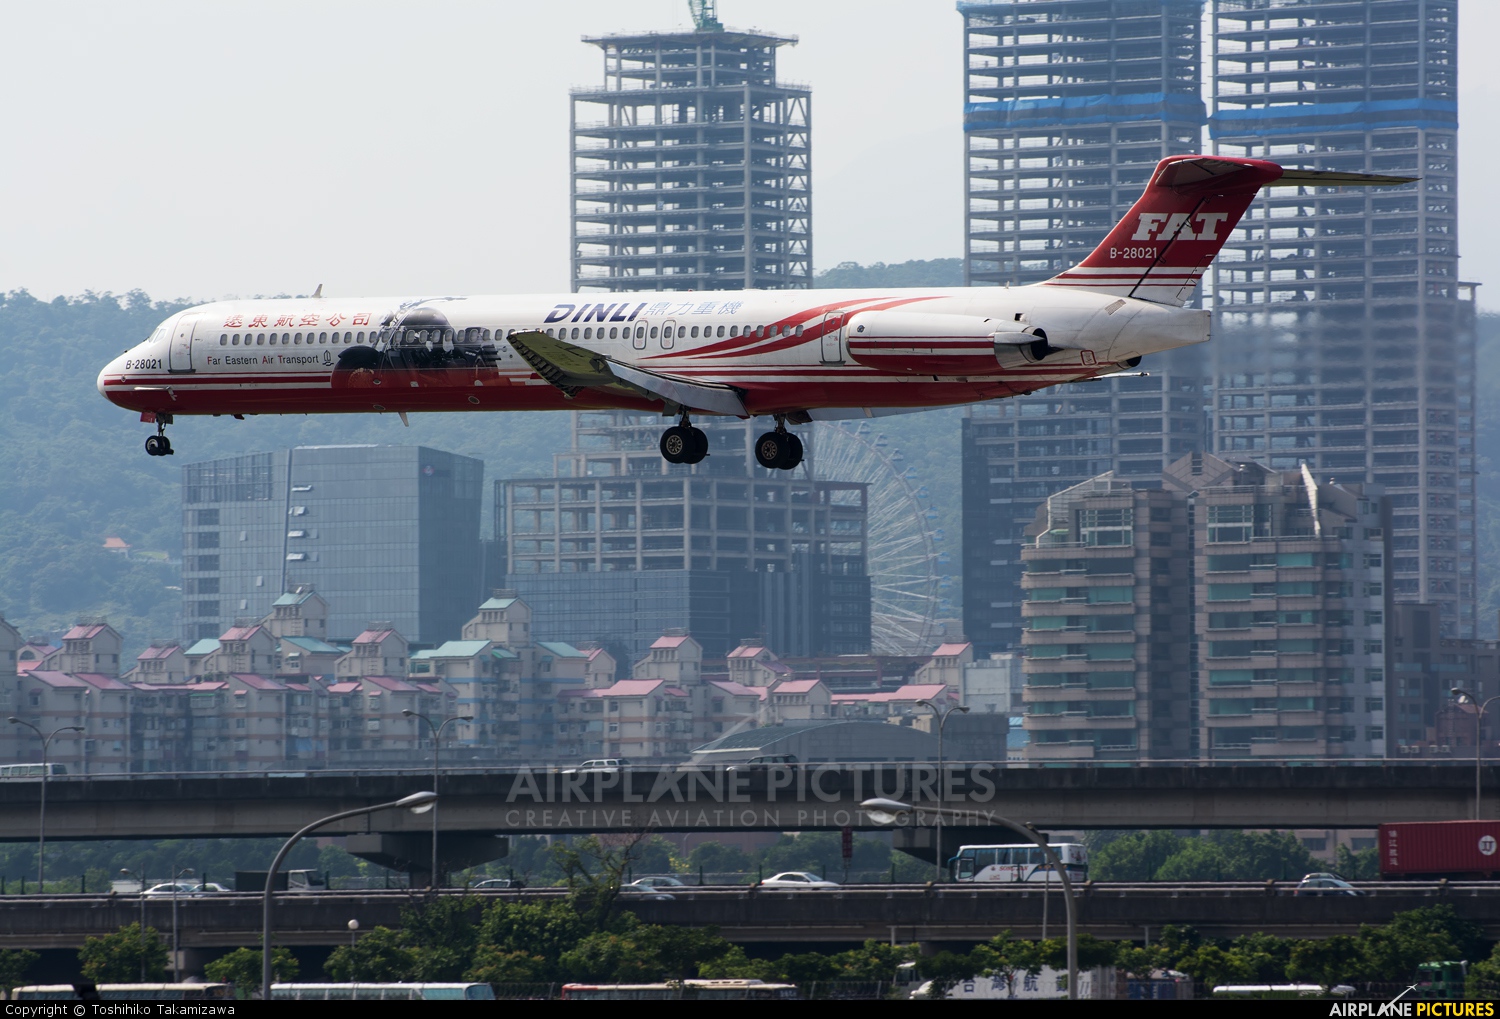 Far Eastern Air Transport B-28021 aircraft at Taipei Sung Shan/Songshan Airport